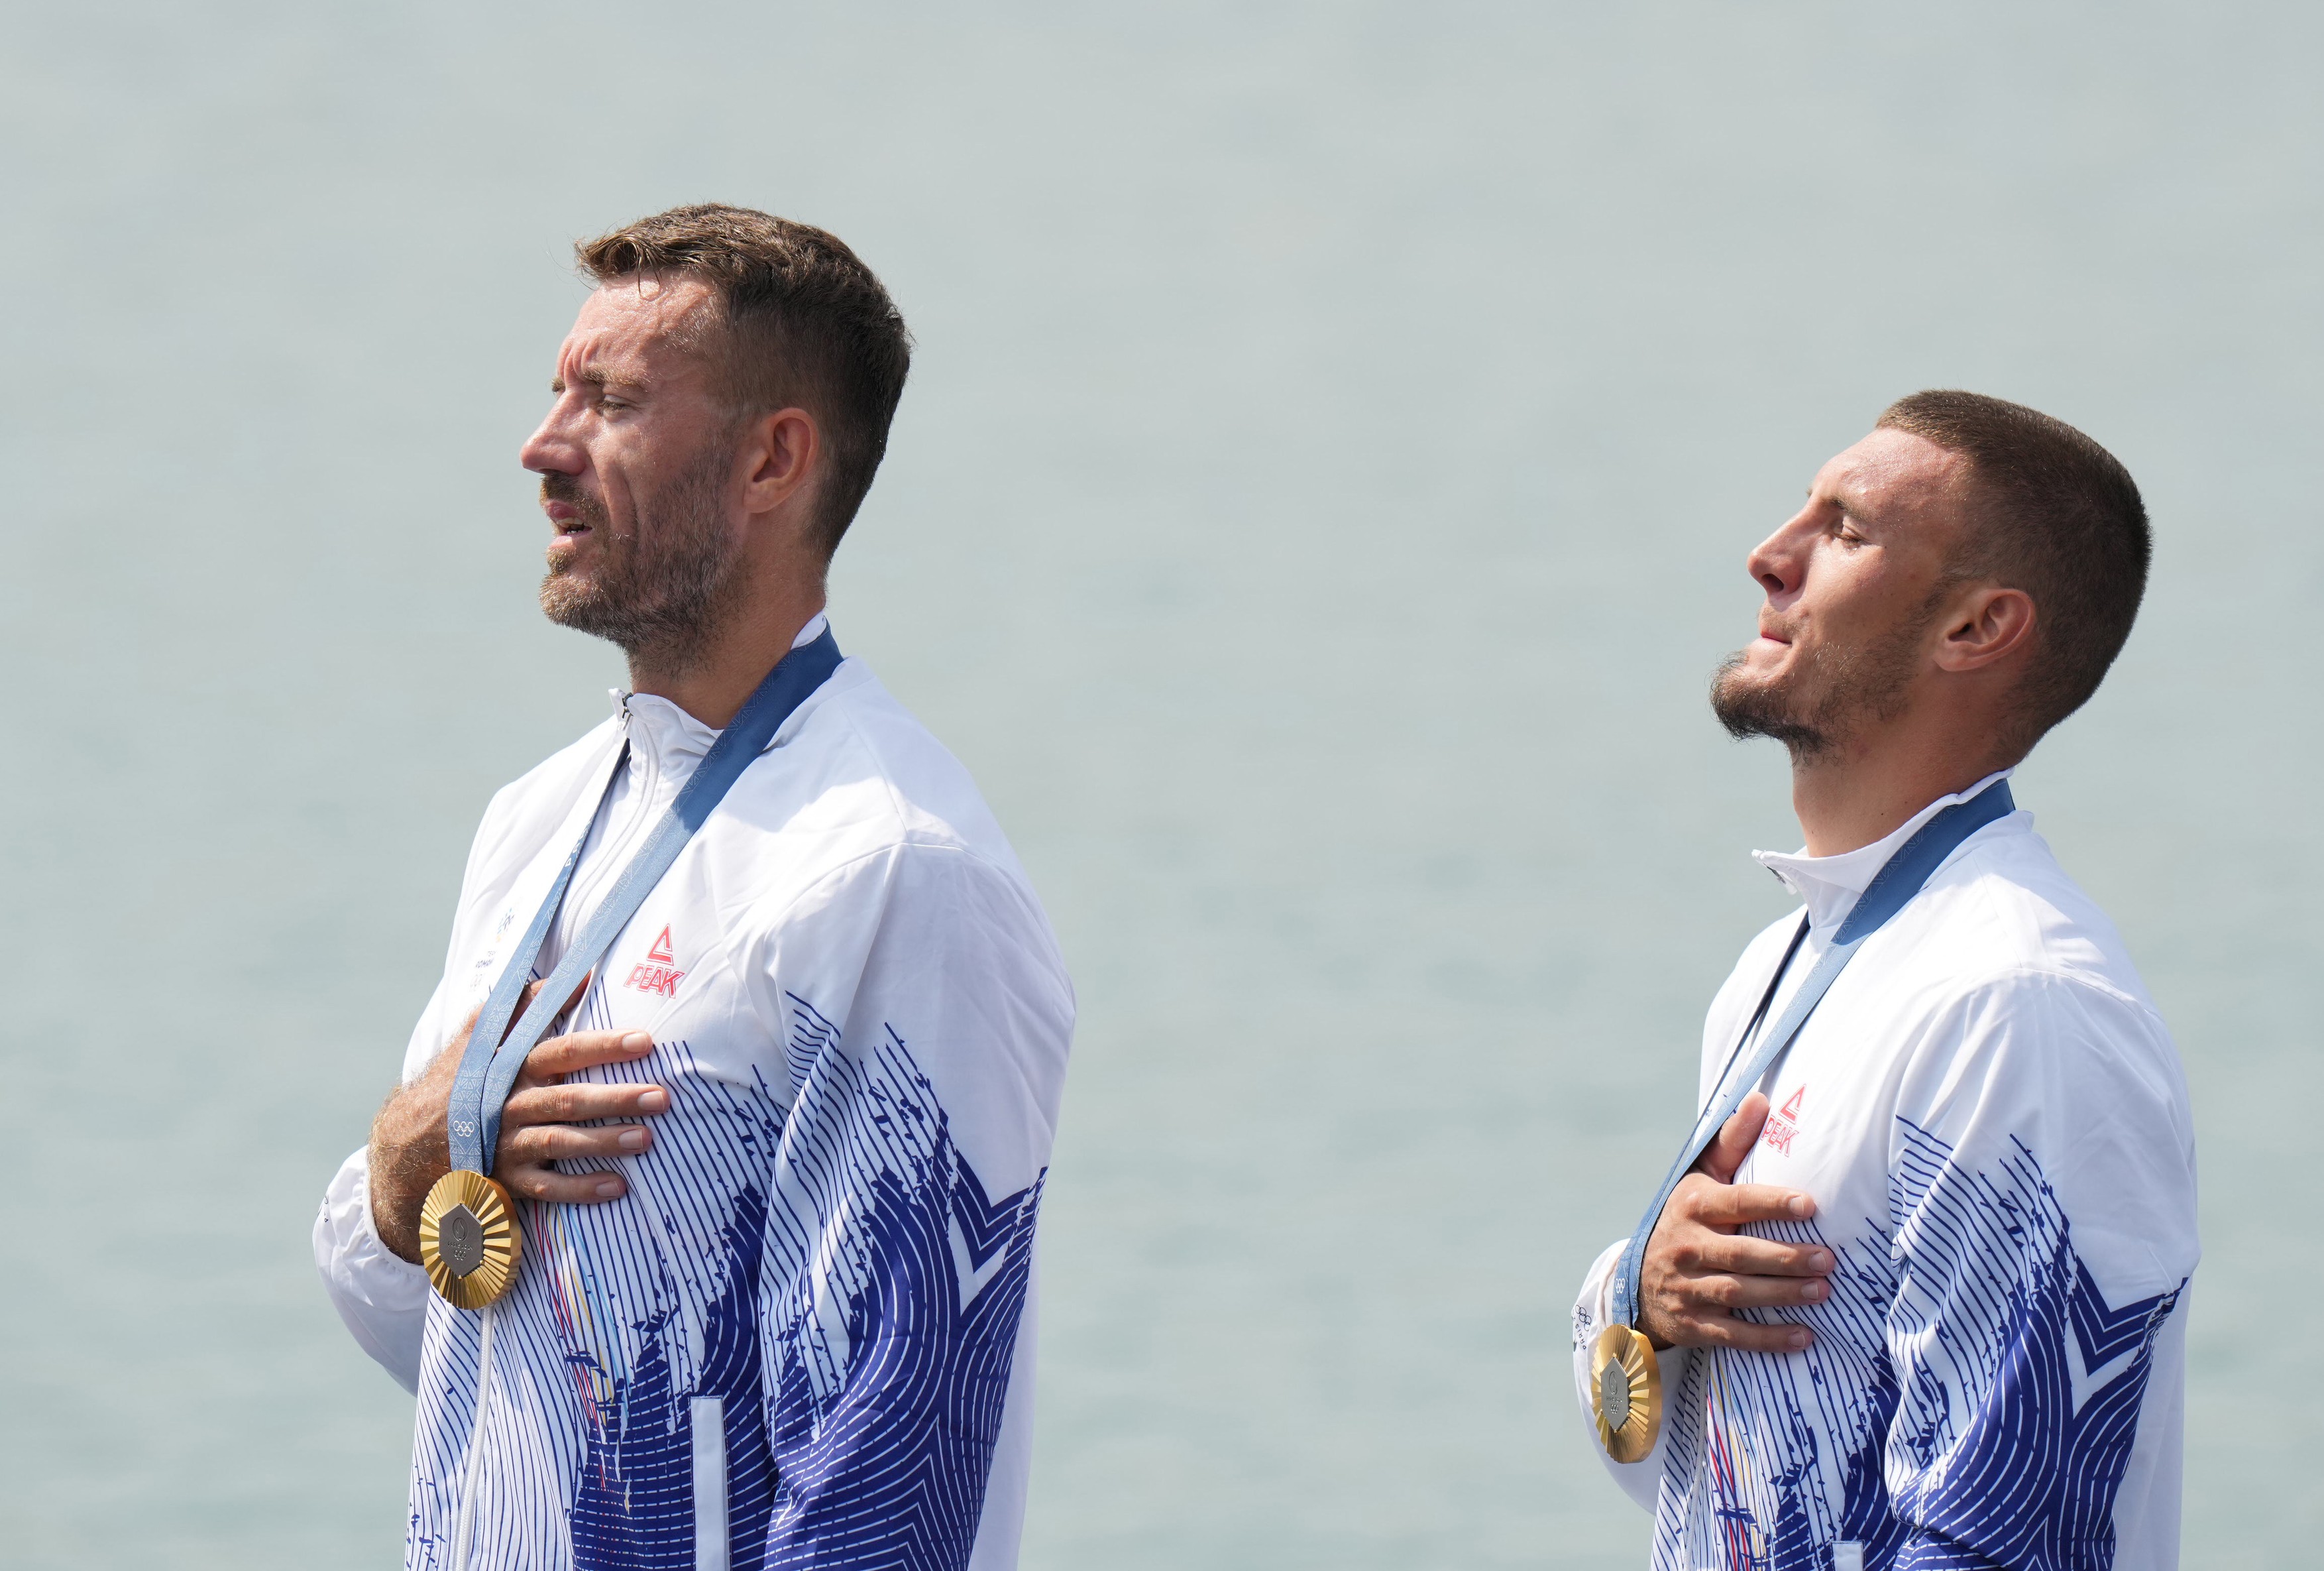 Andrei Cornea și Florin Enache au surprins, după ce au câștigat medalia de aur la dublu vâsle: ”Nu a fost o surpriză”